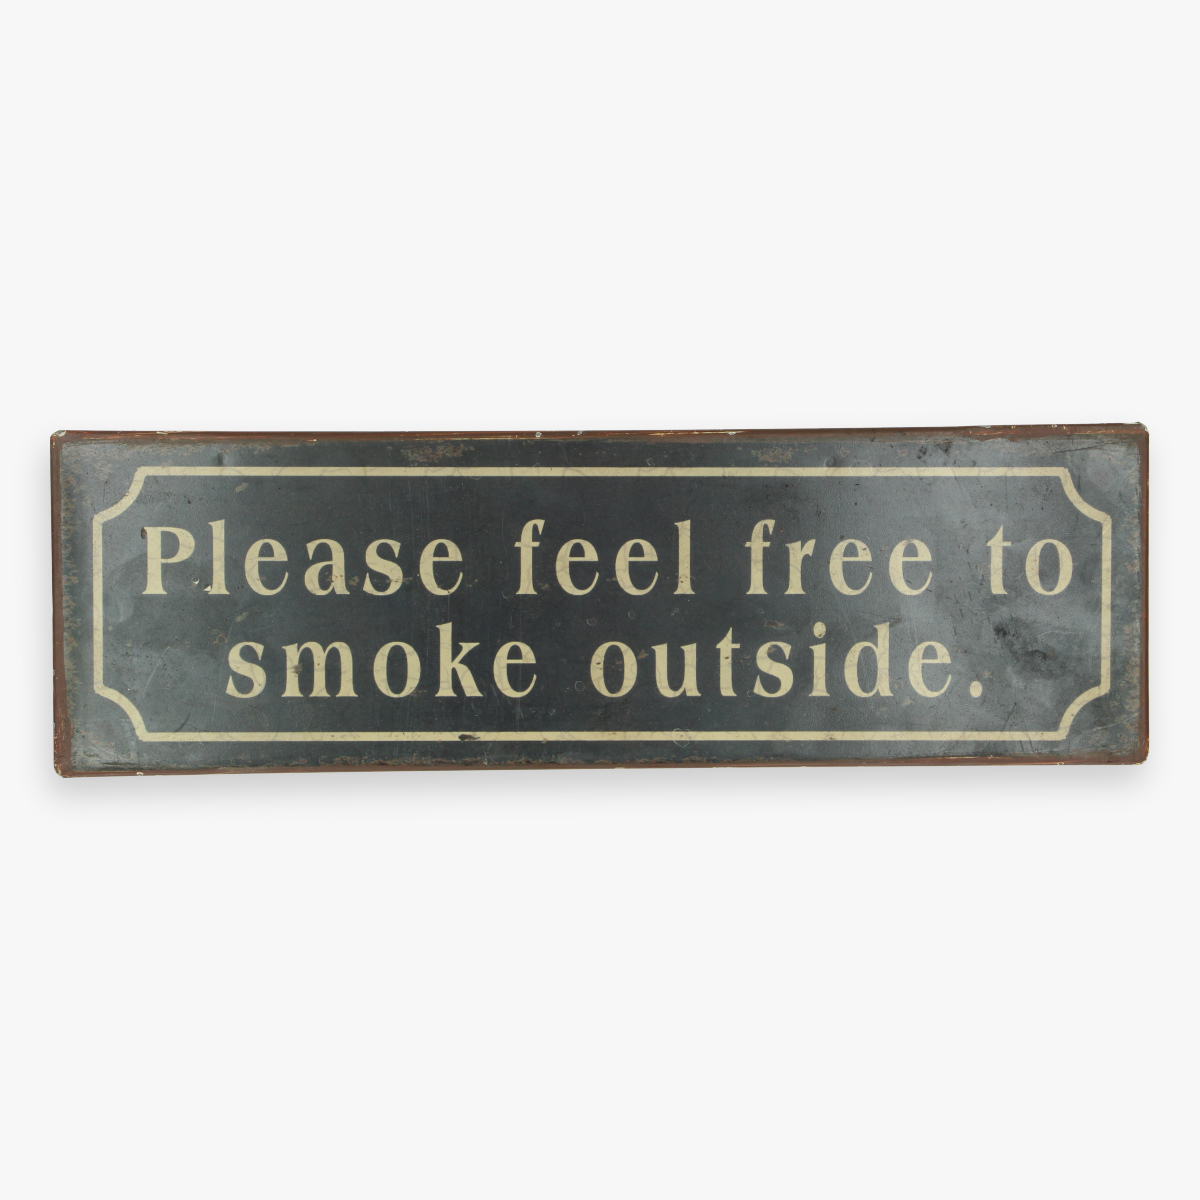 Afbeeldingen van blikken bordje please feel free to smoke outside.